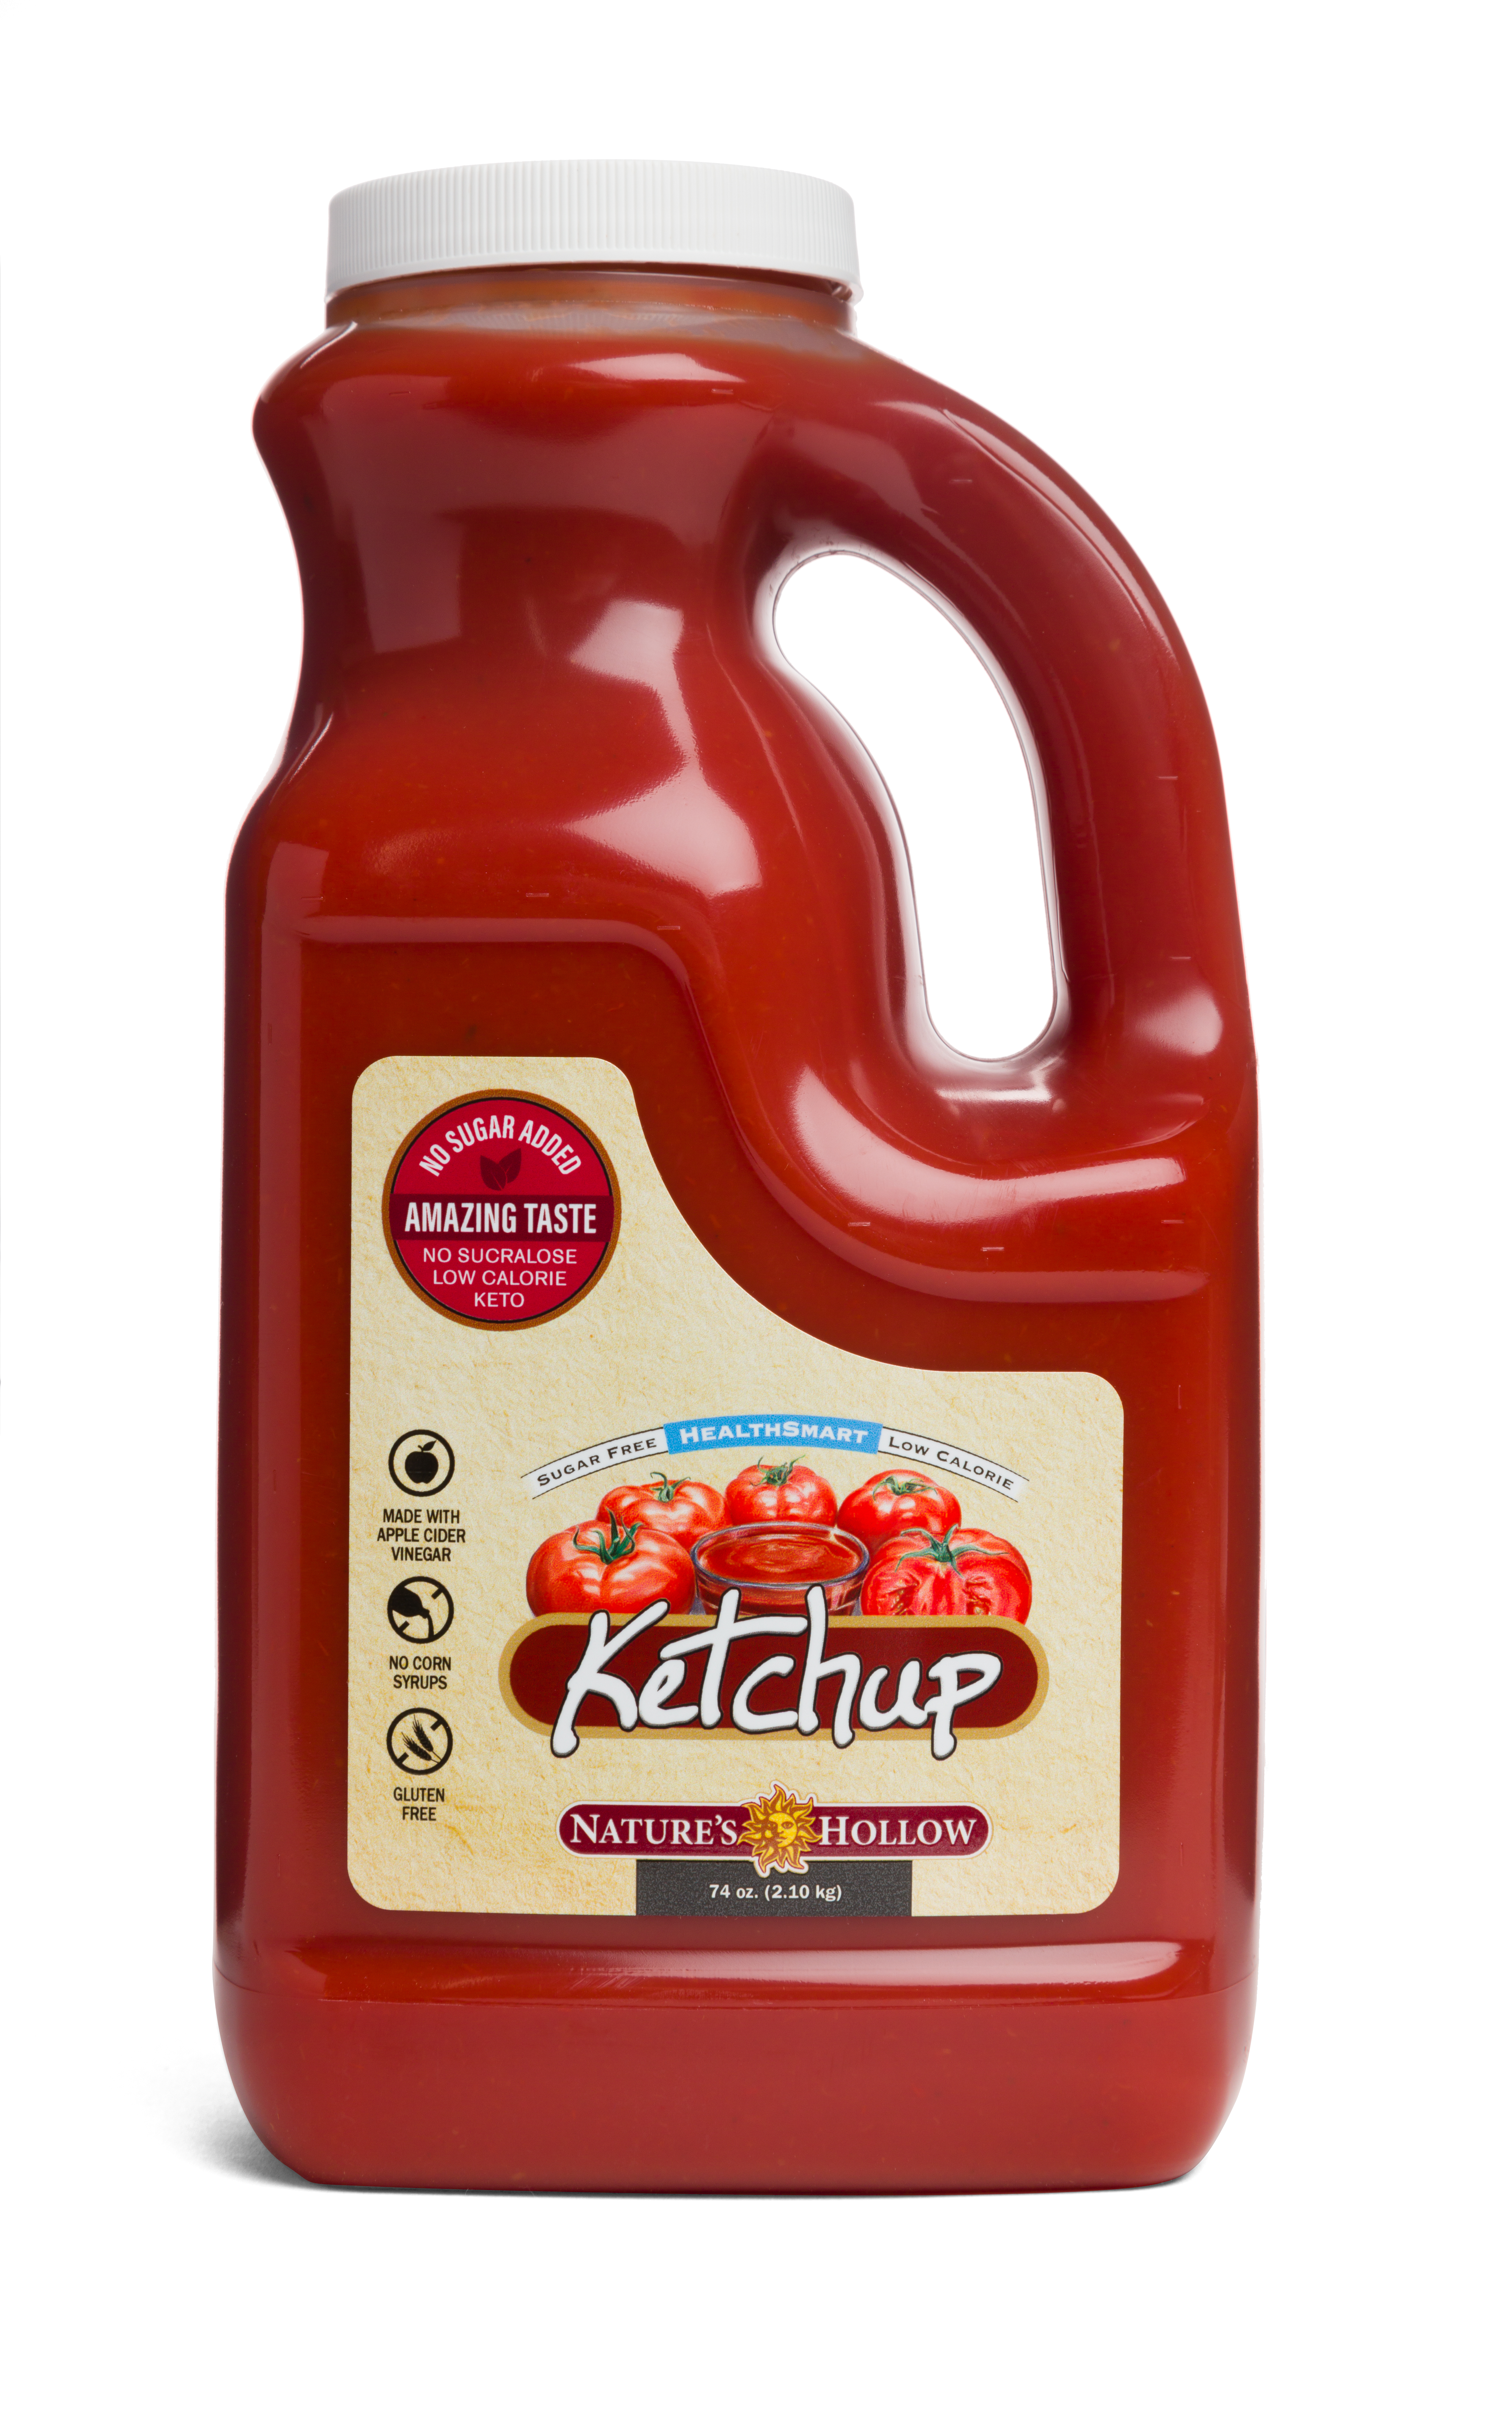 Nature's Hollow HealthSmart® Ketchup BULK 6 units per case 74.0 oz